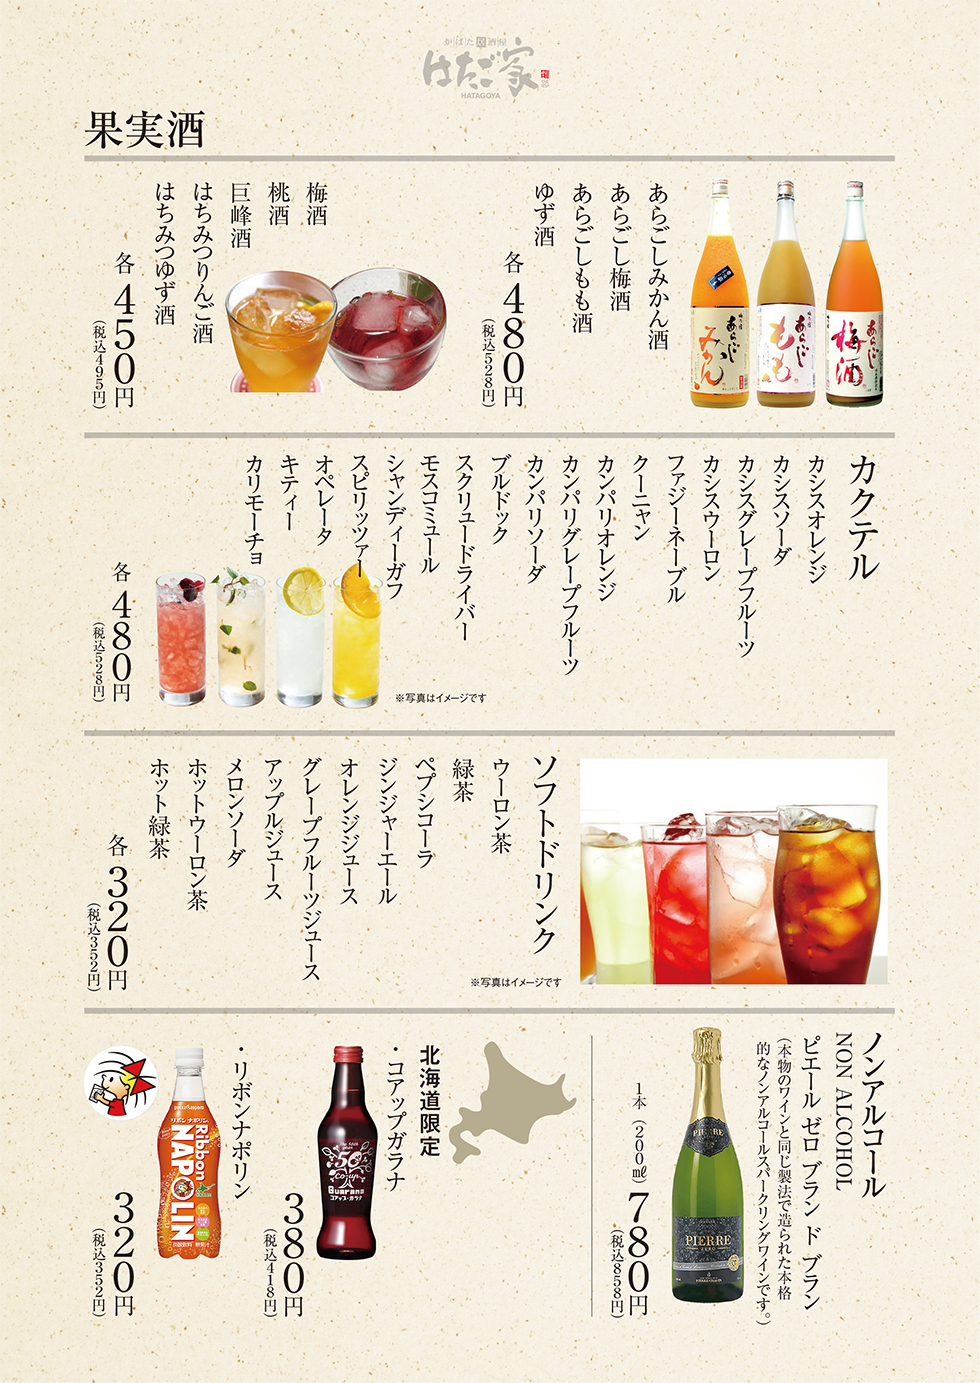 果実酒・カクテル・ソフトドリンク・ノンアルコール